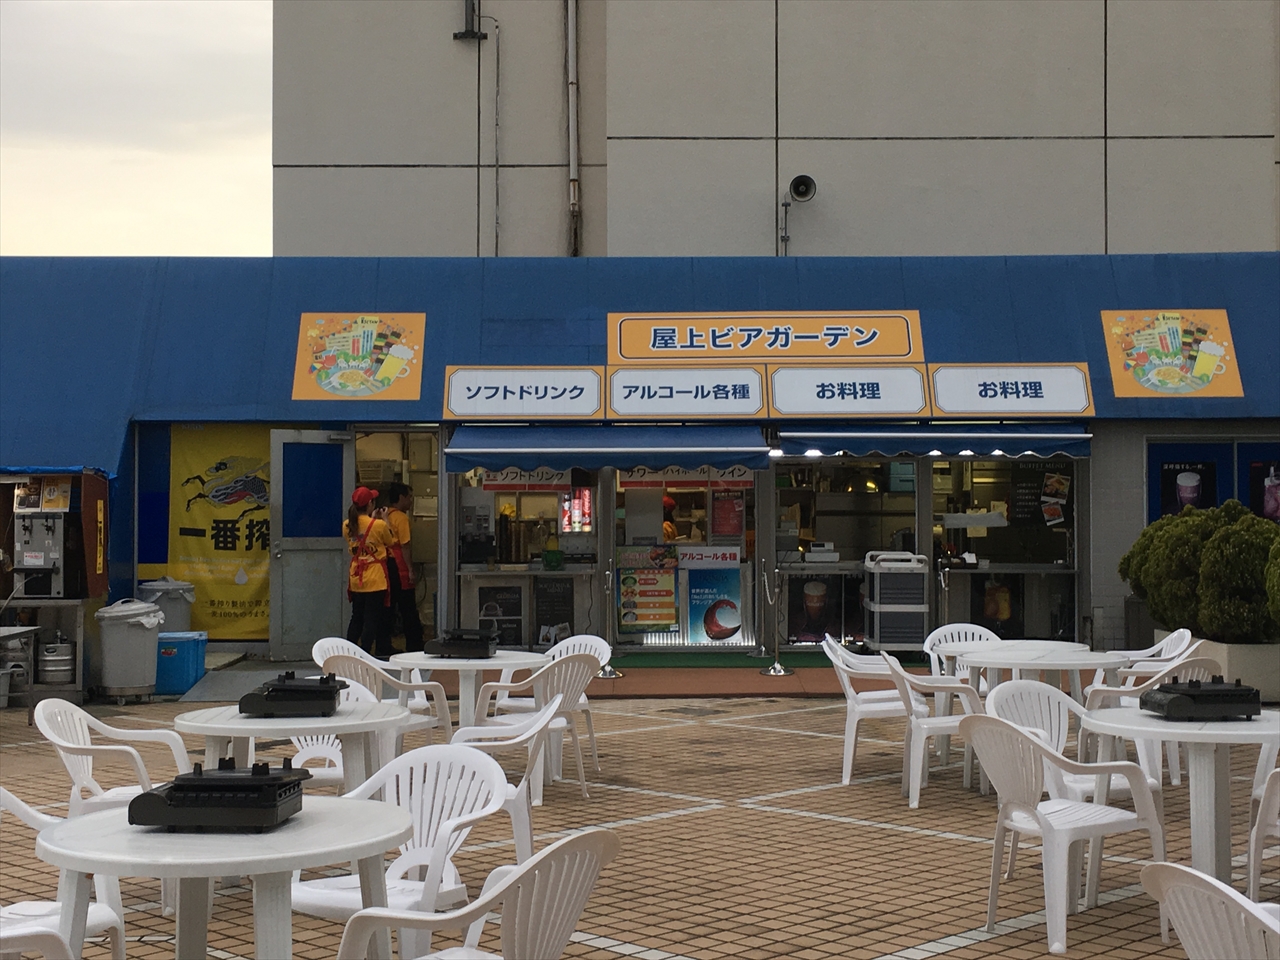 伊勢丹浦和店ビアガーデン 東京ビアガーデン情報館 年版 秋ビアガーデン 10月も営業している人気の都内ビアガーデン ビアテラスを探そう